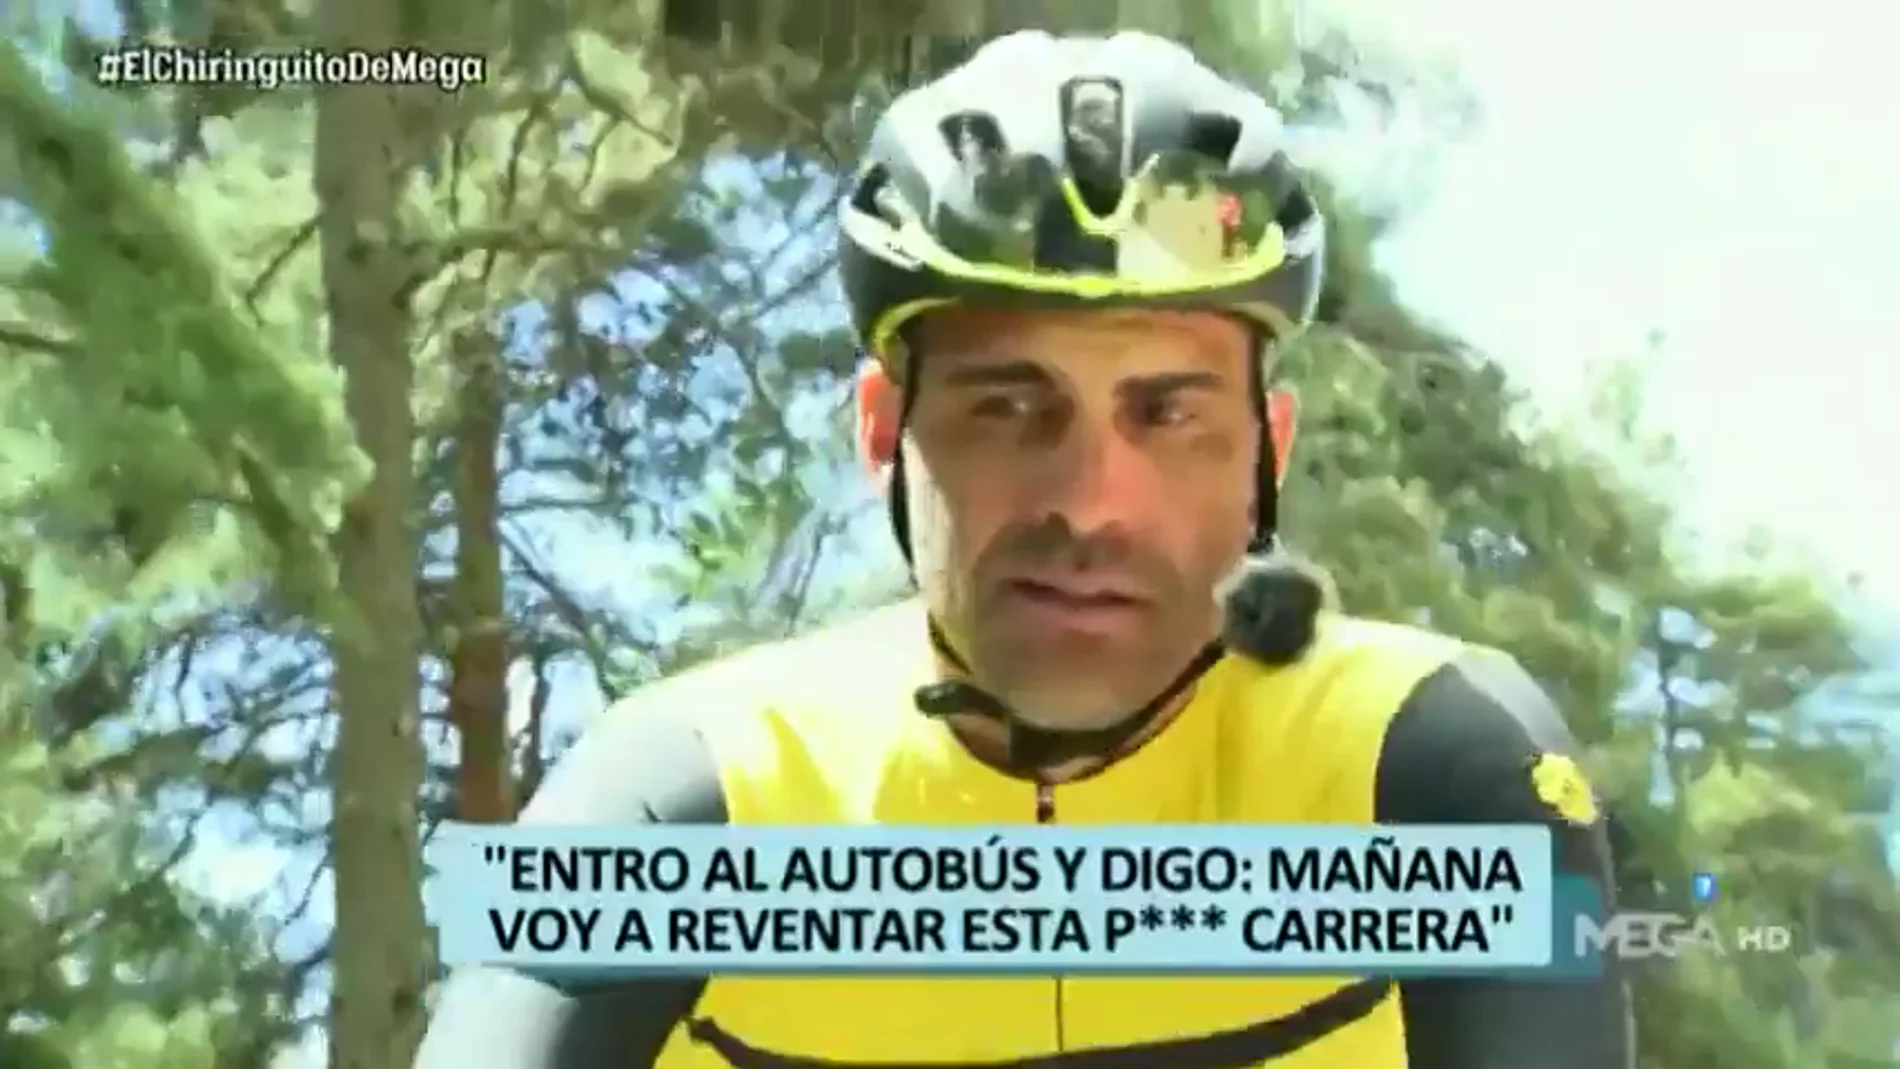 Óscar Pereiro: "El ciclismo ha estado maltratado en los medios de comunicación, se ha hecho mucho daño"